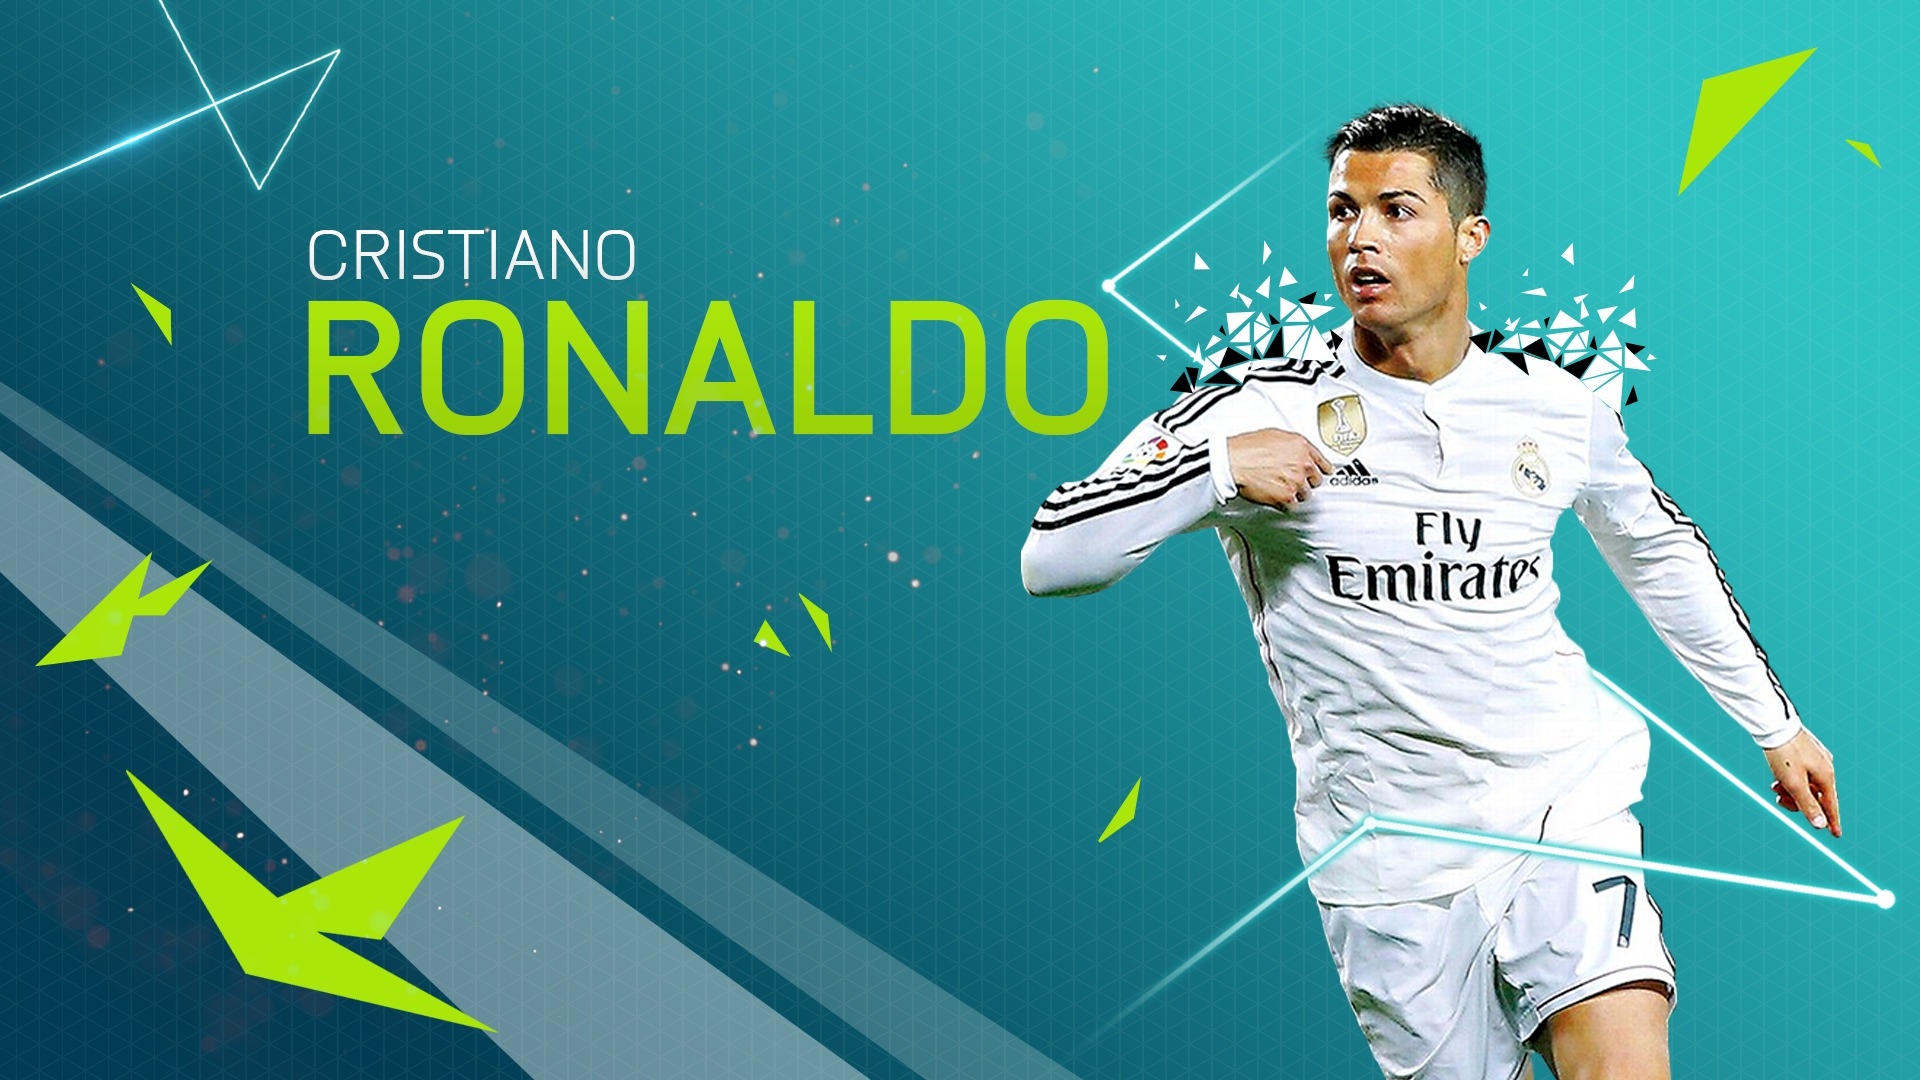 Ronaldo Hd Wallpaper 2018 Unique Best Cristiano Ronaldo - Fifa 17 Cristiano Ronaldo , HD Wallpaper & Backgrounds